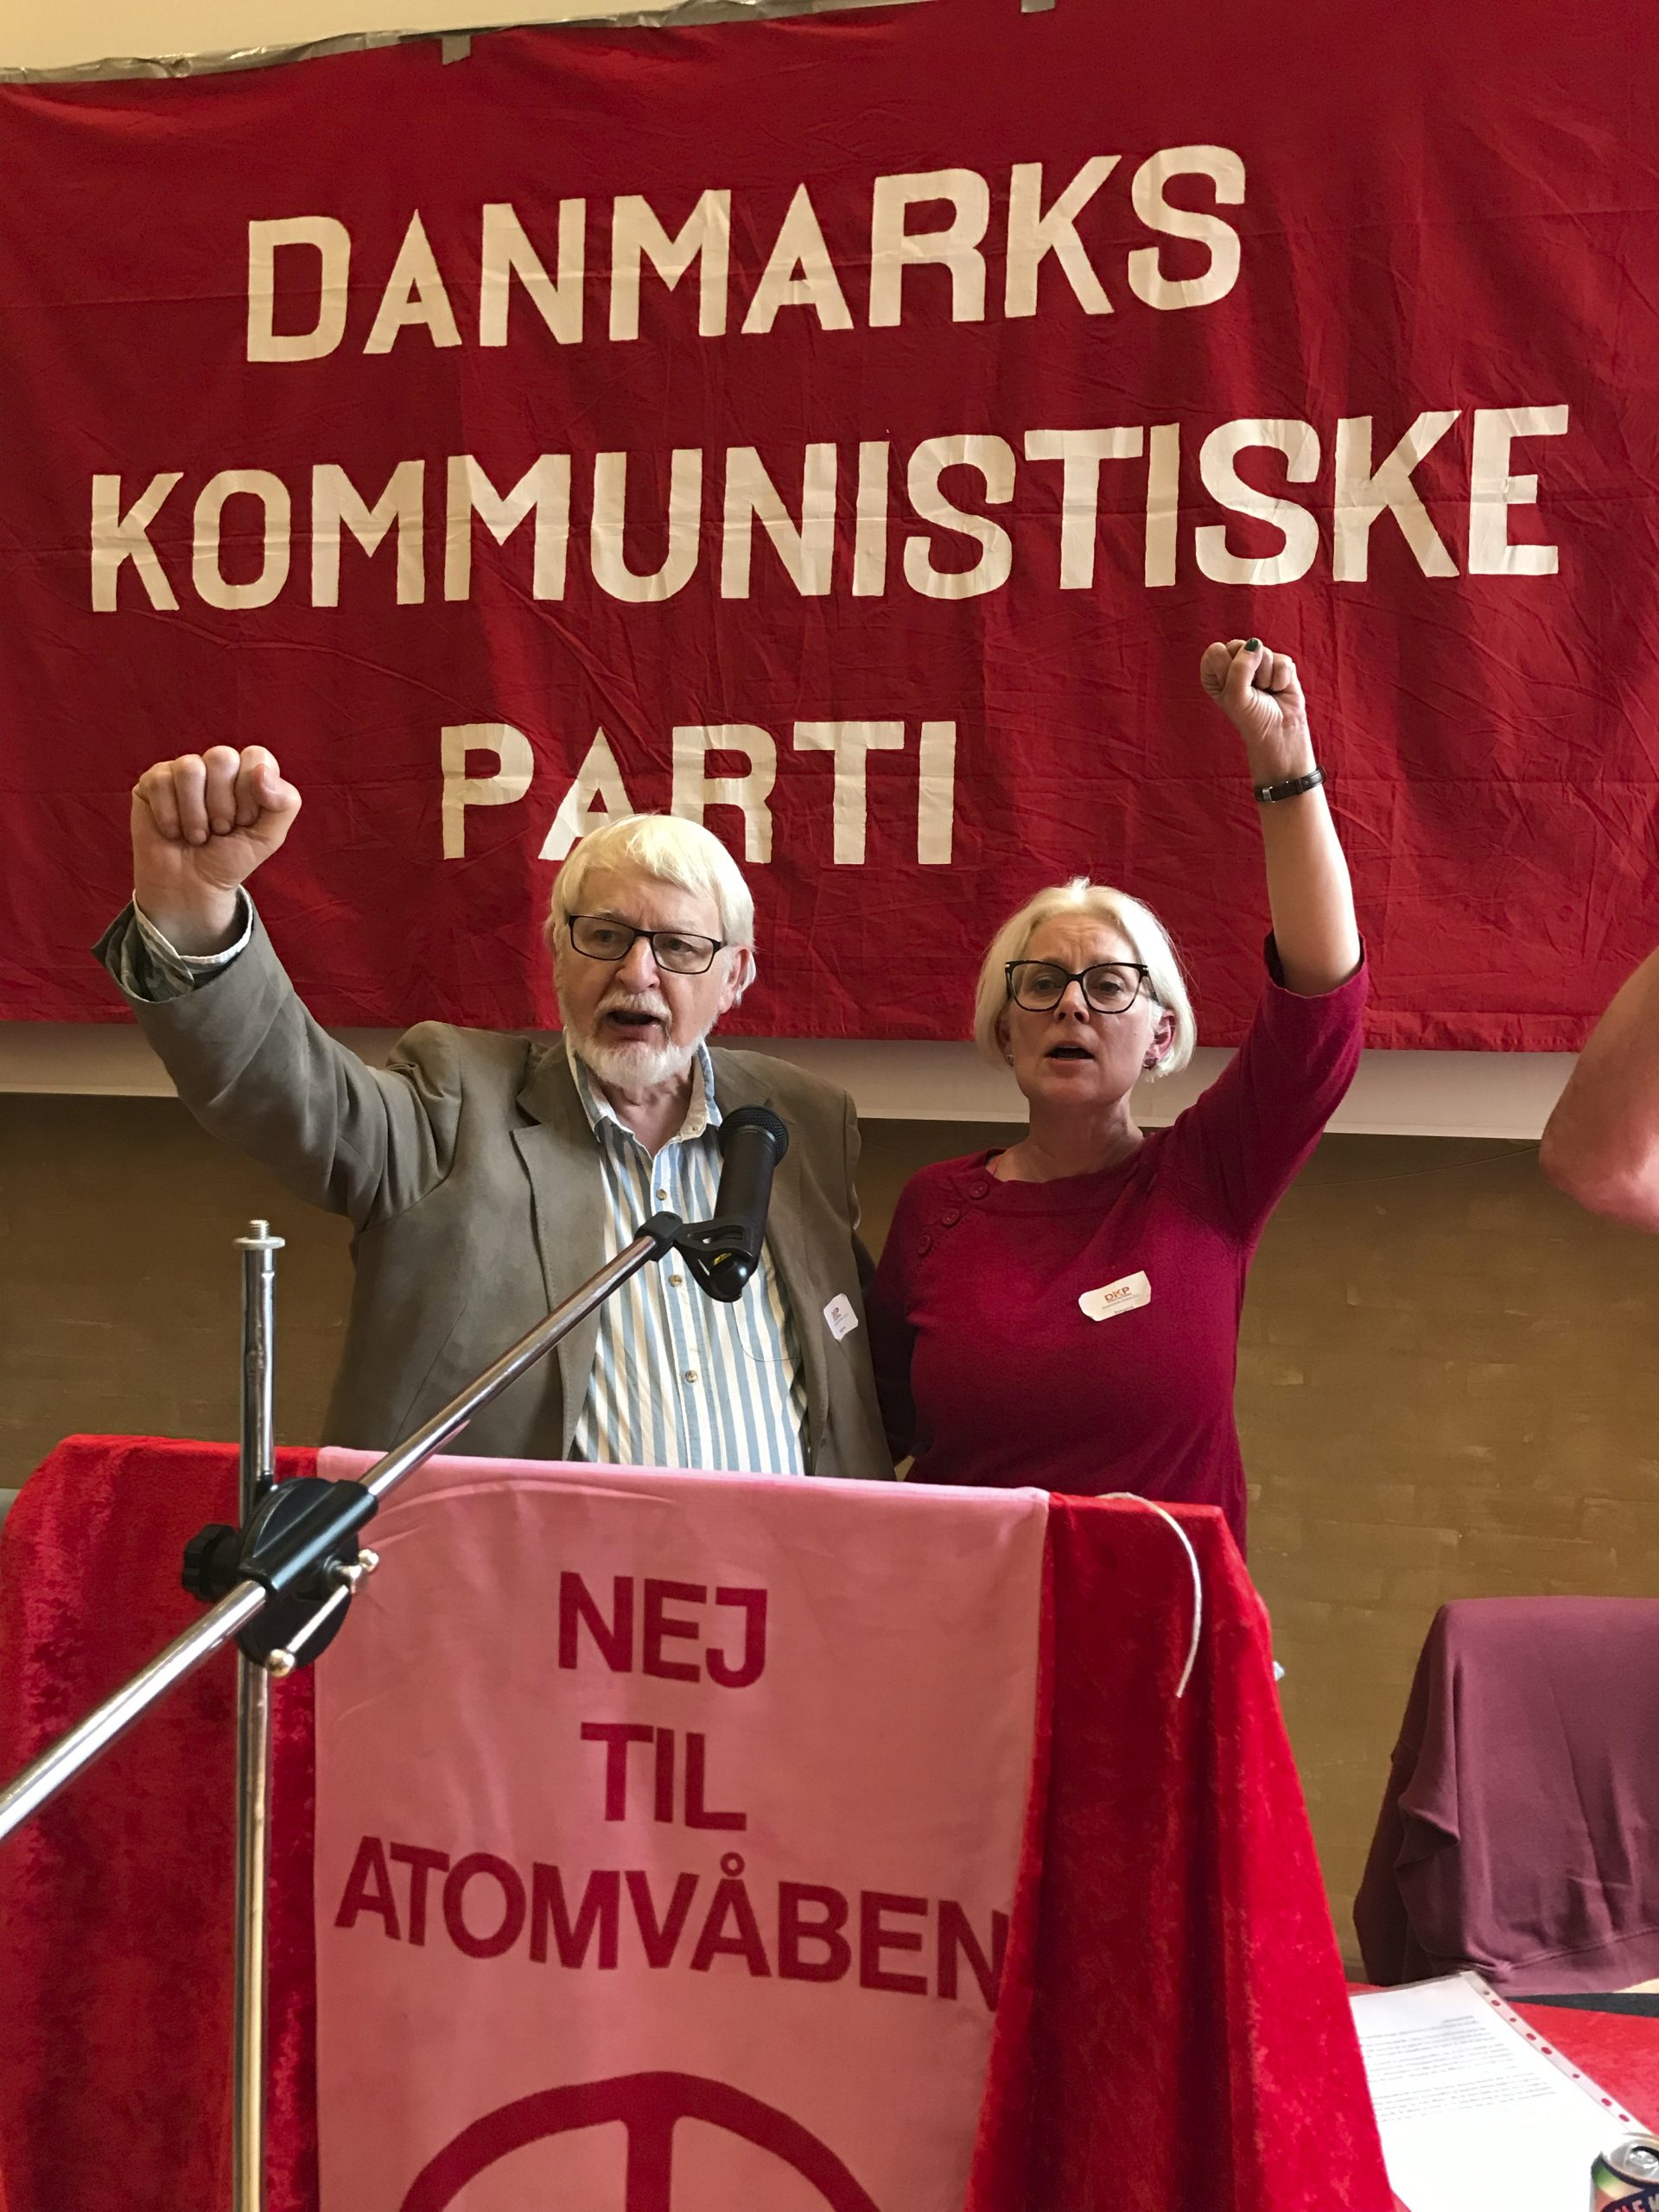 Deux partis communistes danois n’en font plus qu’un